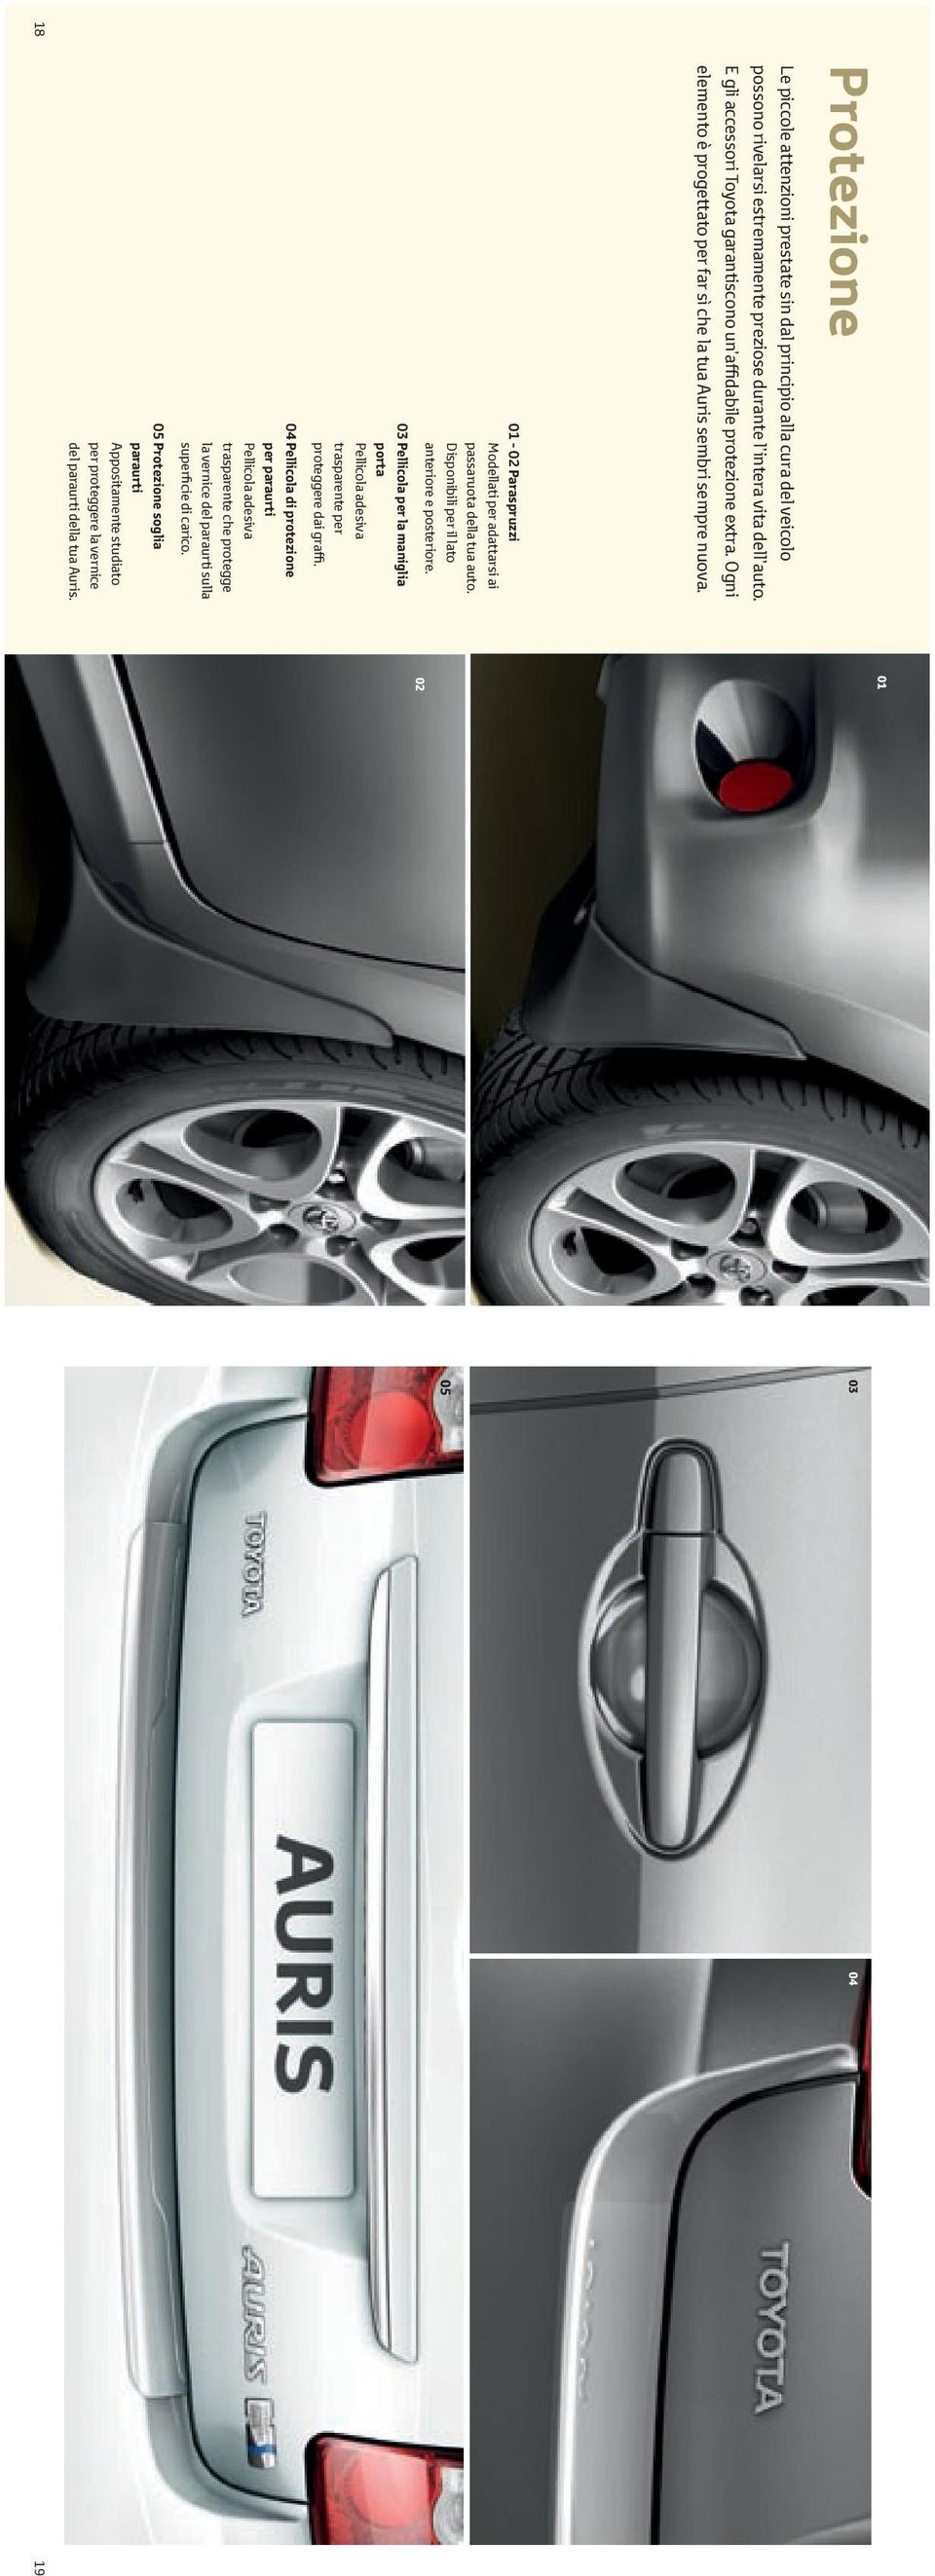 01-02 Paraspruzzi Modellati per adattarsi ai passaruota della tua auto. Disponibili per il lato anteriore e posteriore.